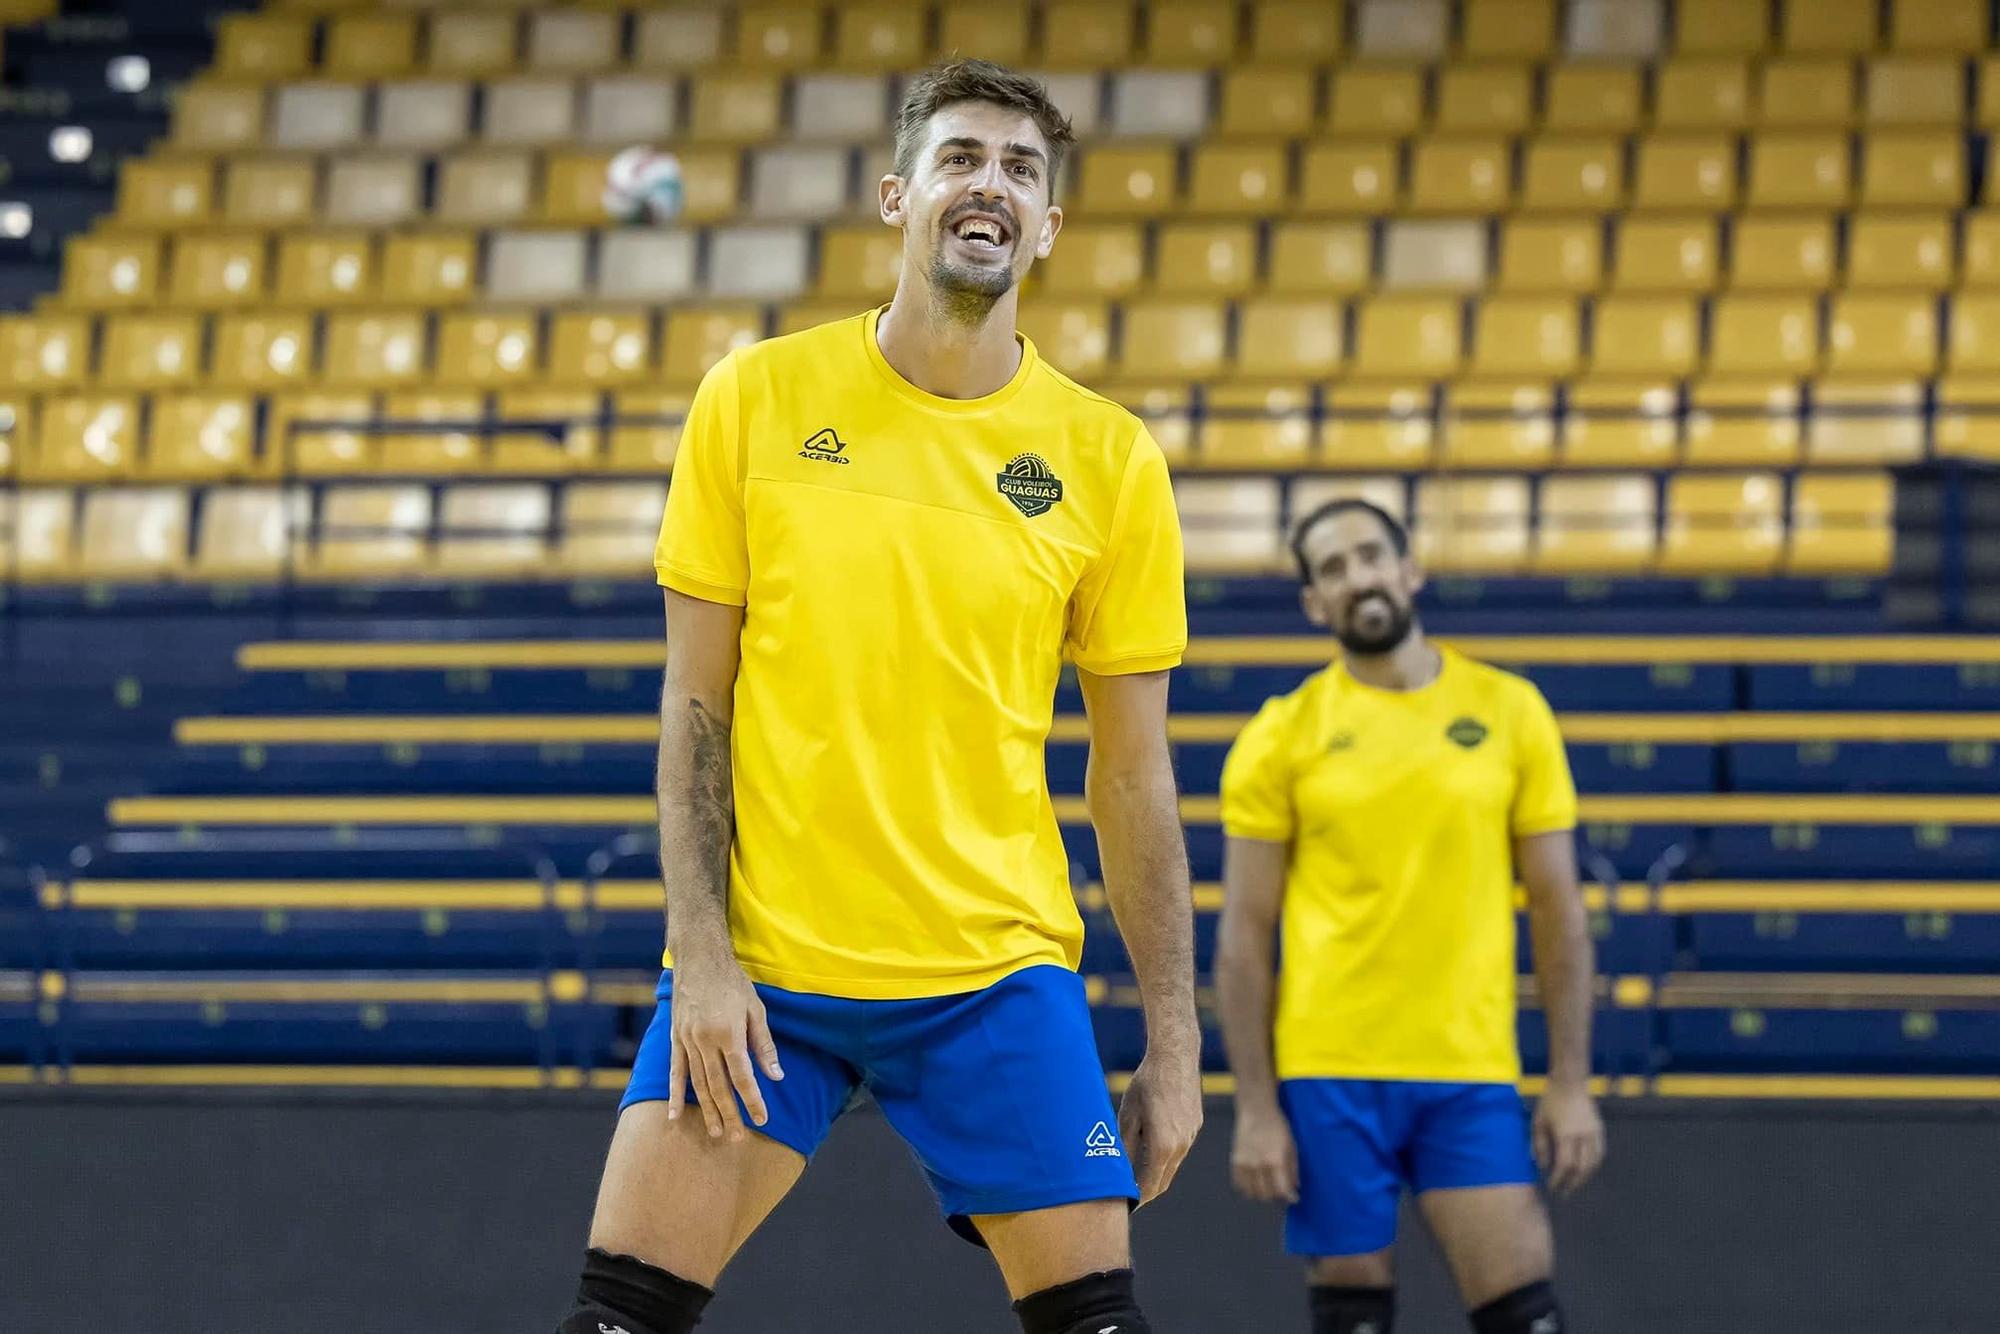 Jorge Almansa sonríe durante un entrenamiento con el Guaguas, con su compañero Nico Bruno al fondo.